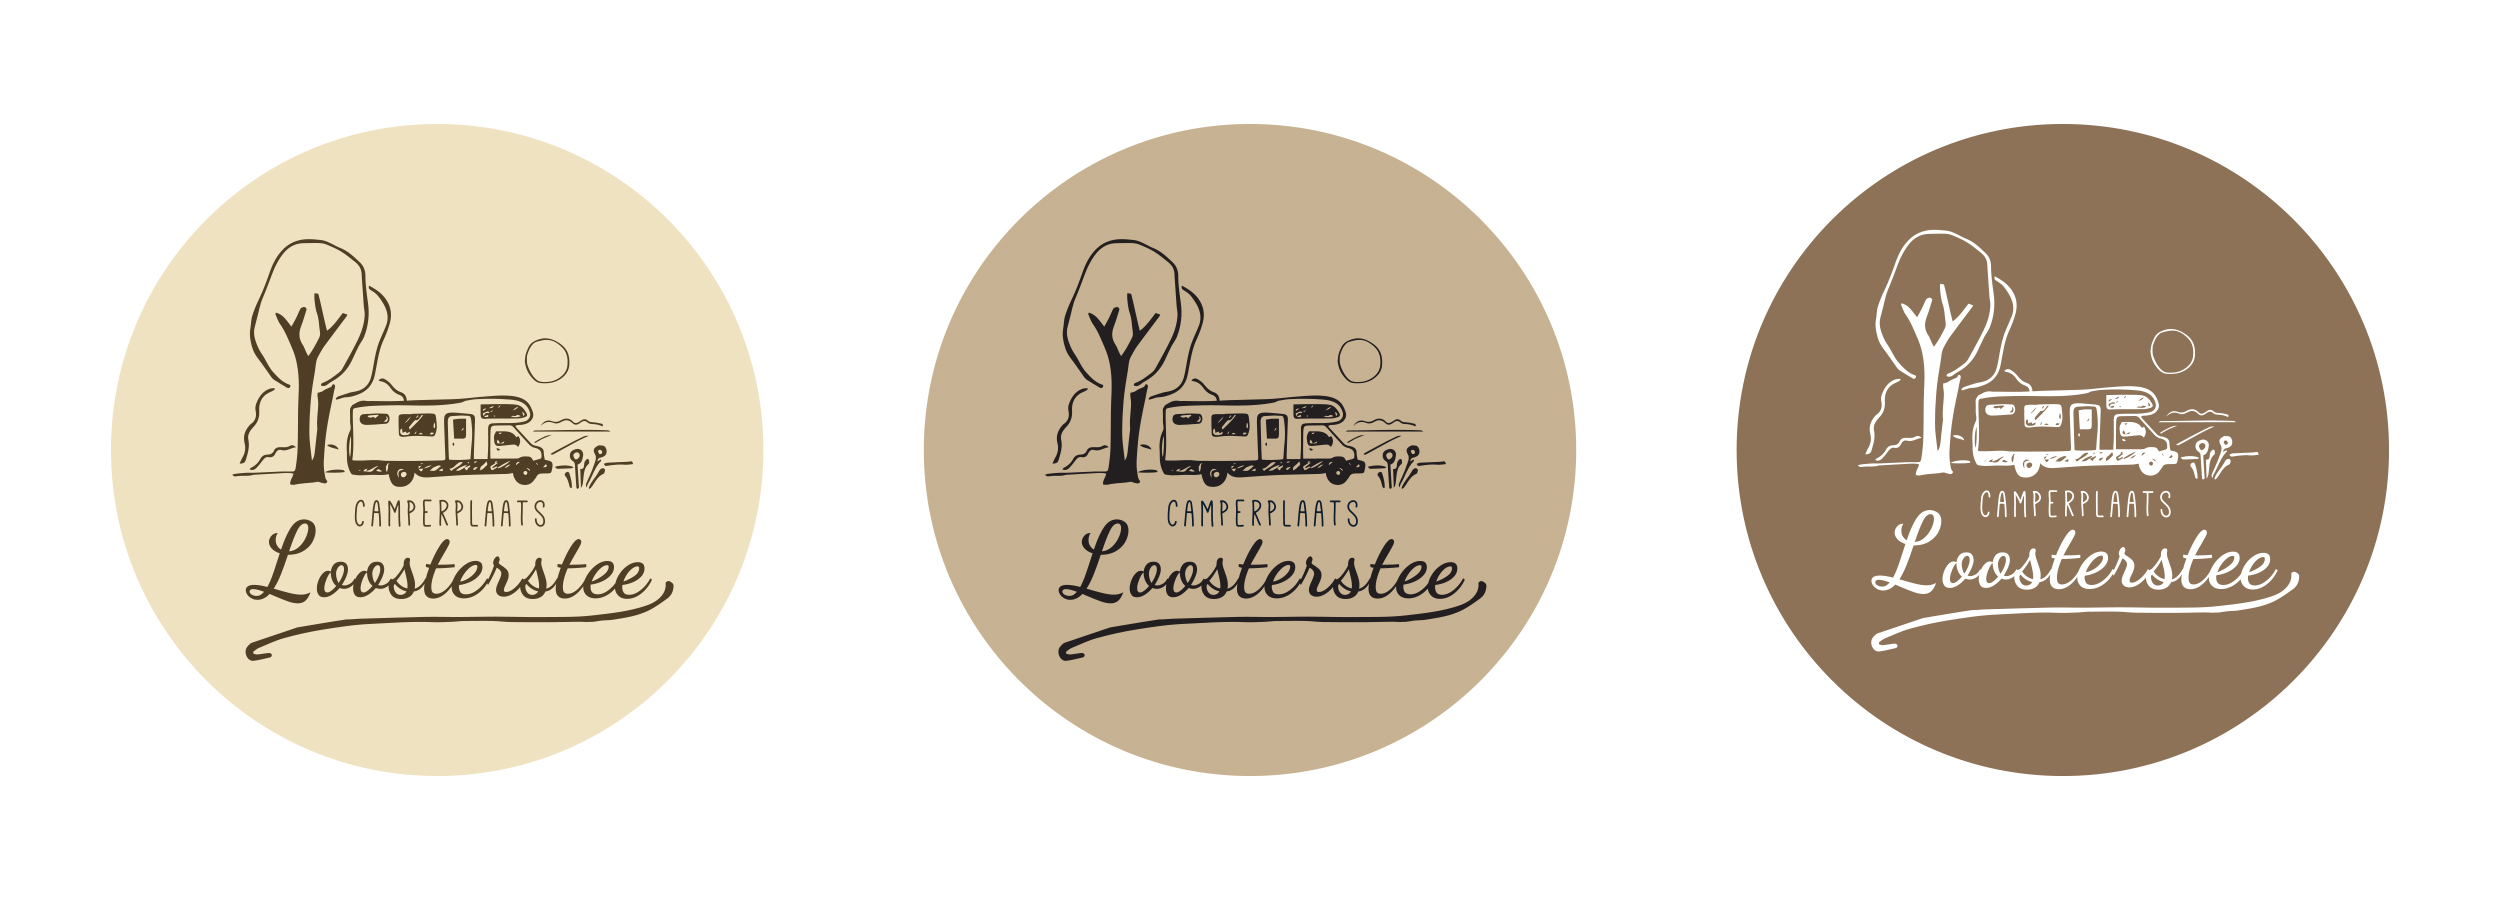 Logo variaties camperplaats Loosterstee door JantyDesign